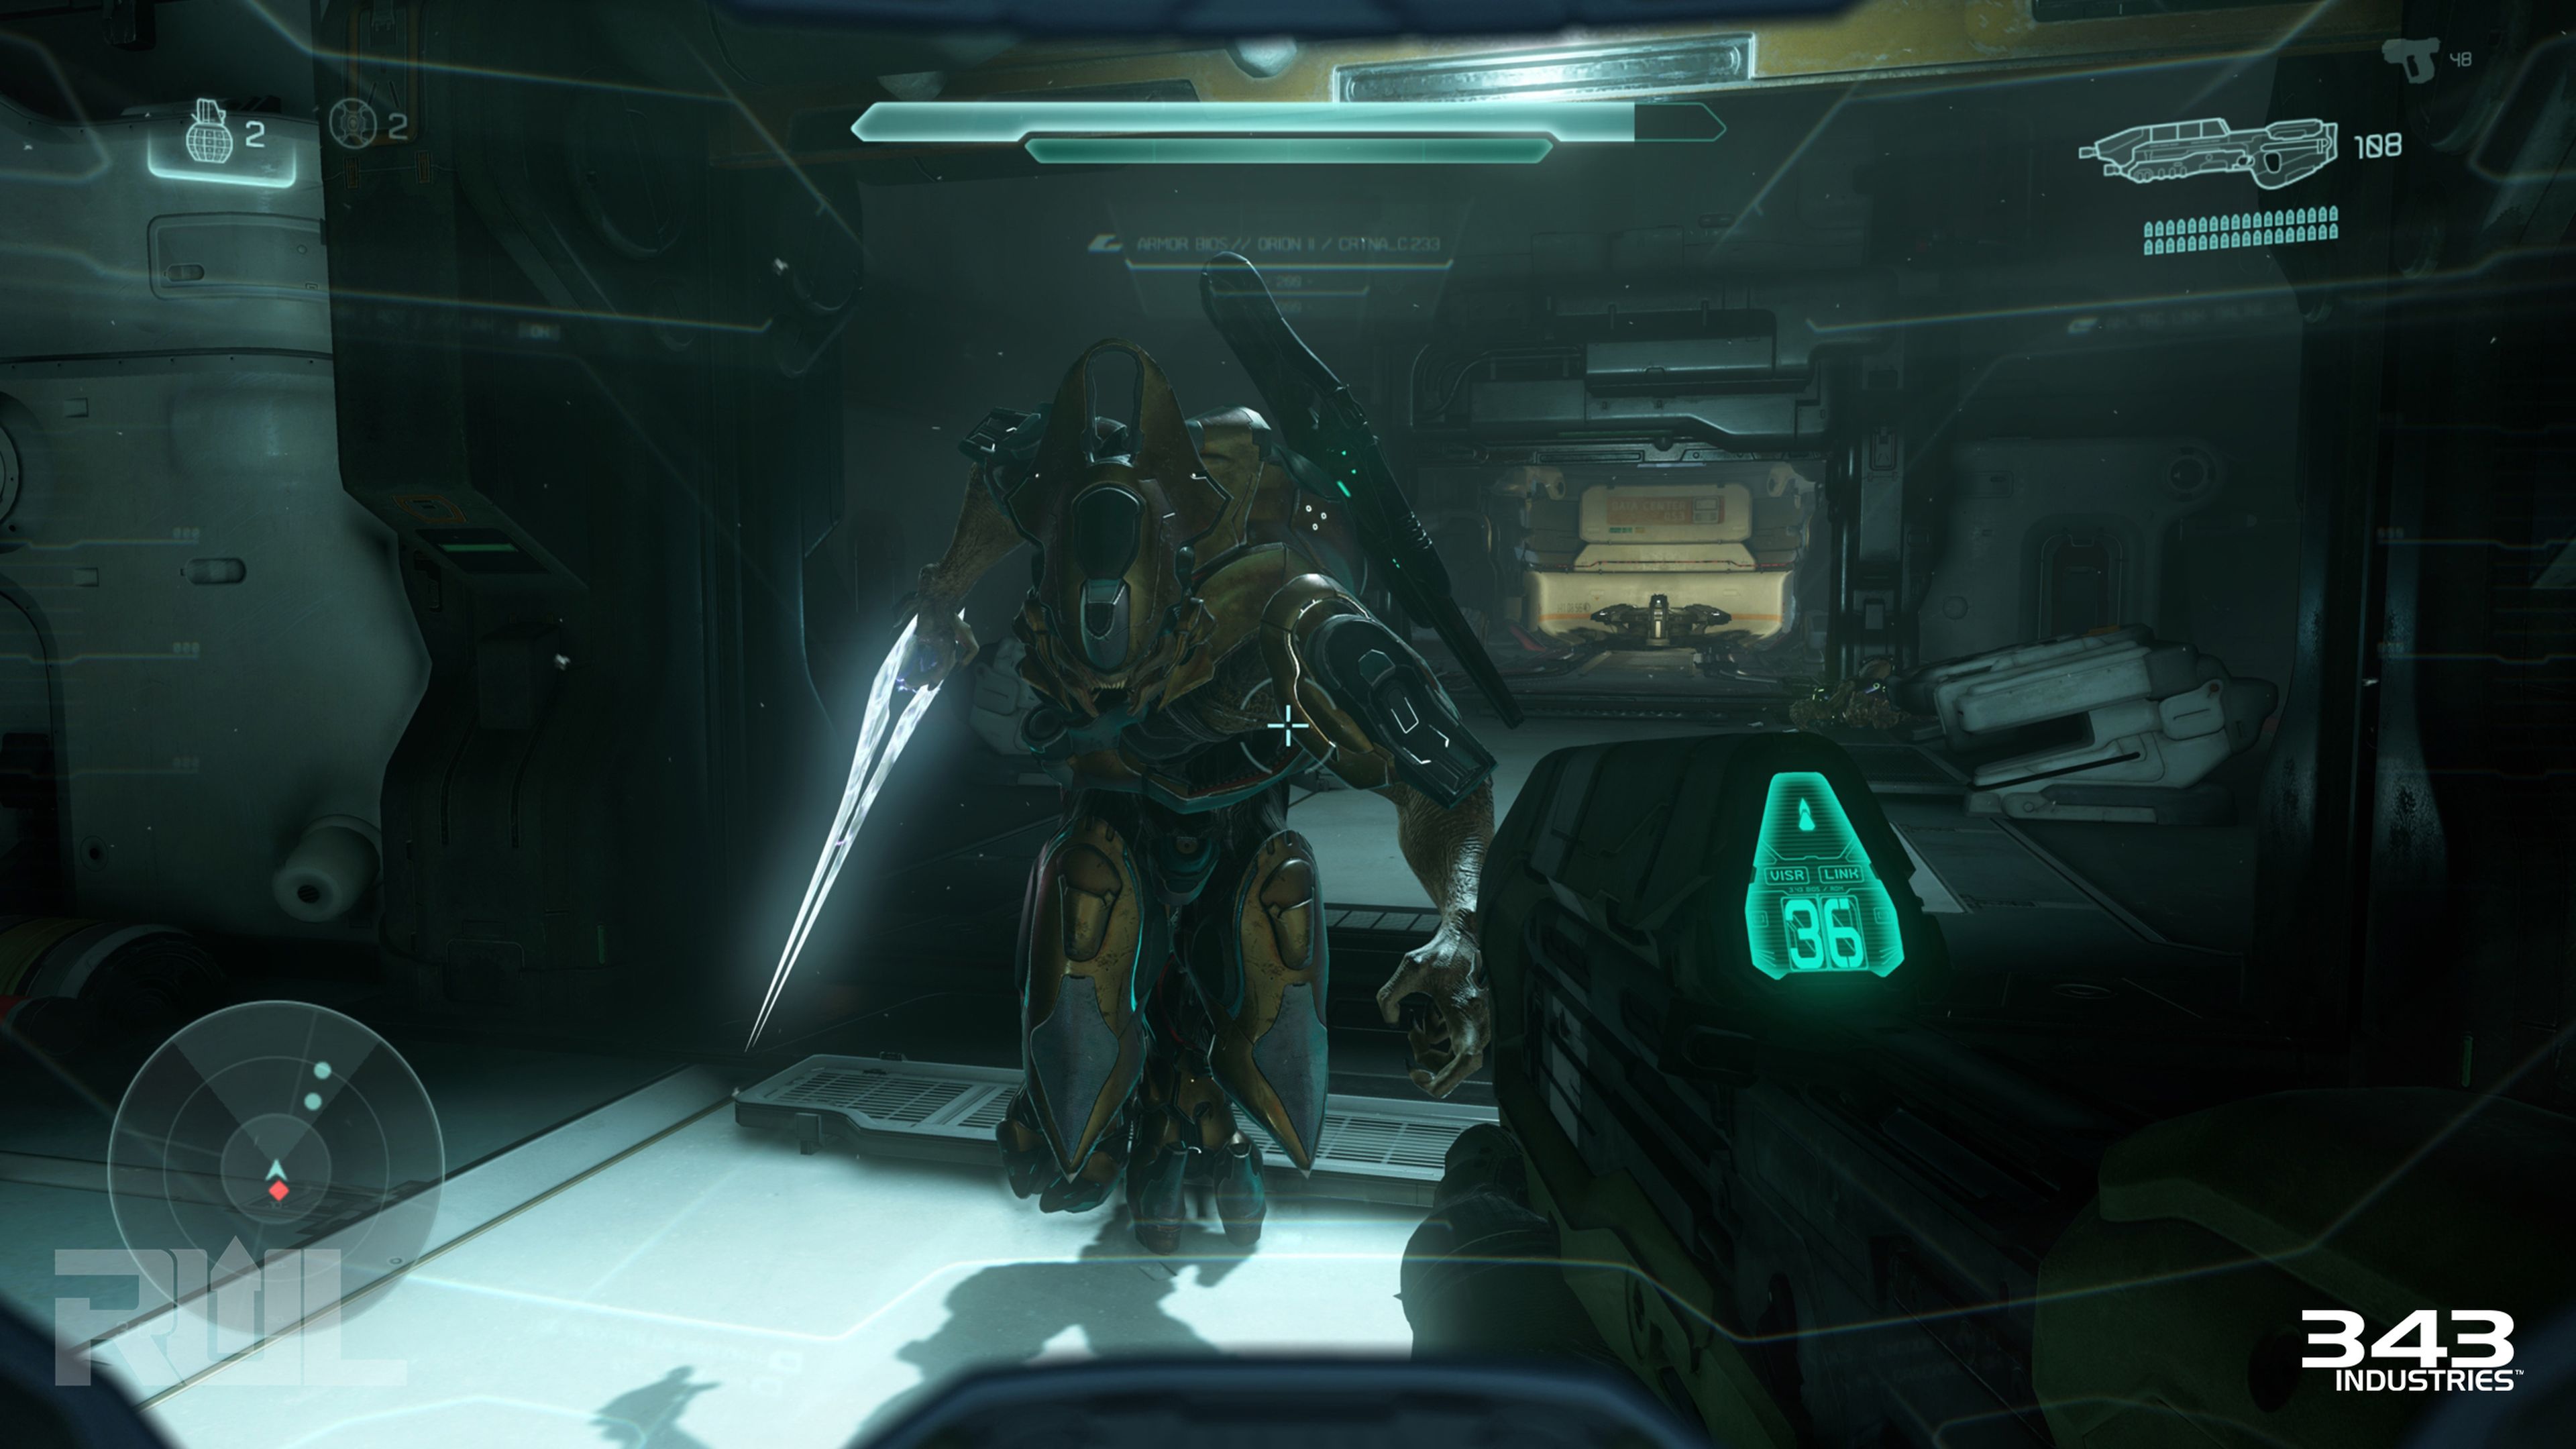 Halo 5 Guardians impresiones finales de la campaña